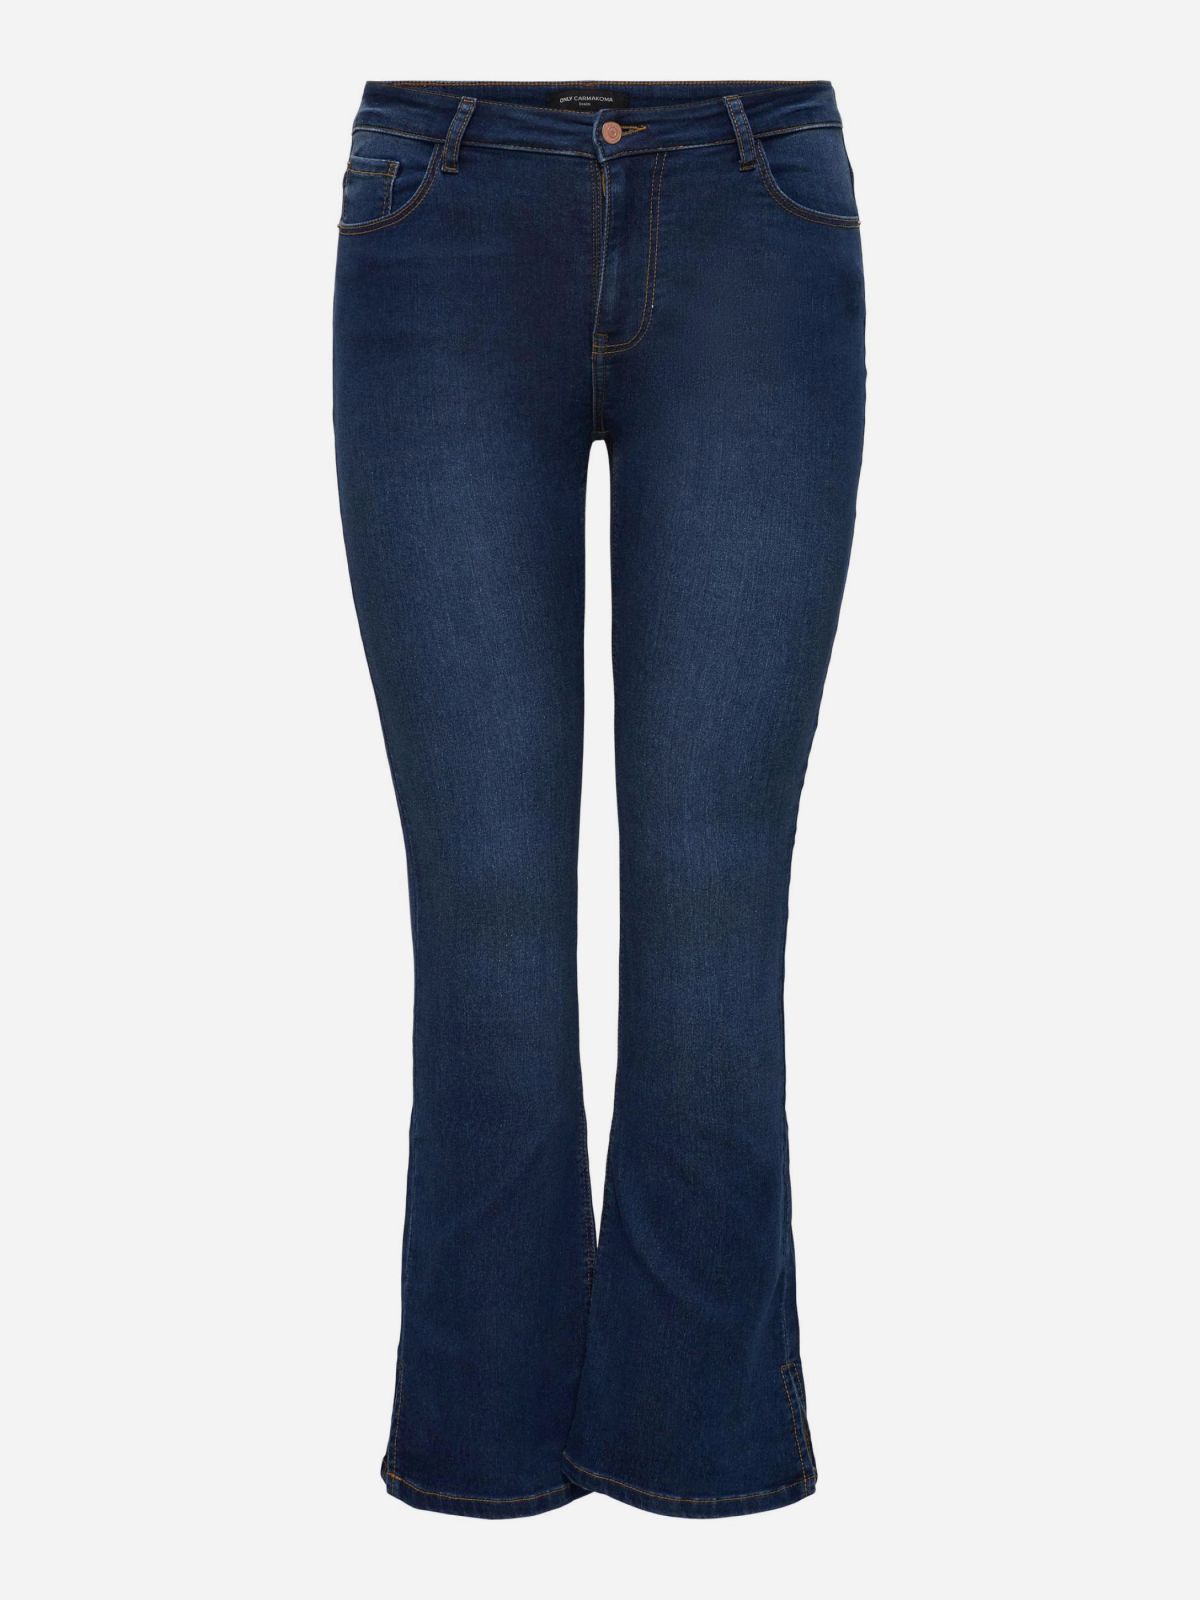  ג'ינס ארוך בגזרת FLARE של ONLY